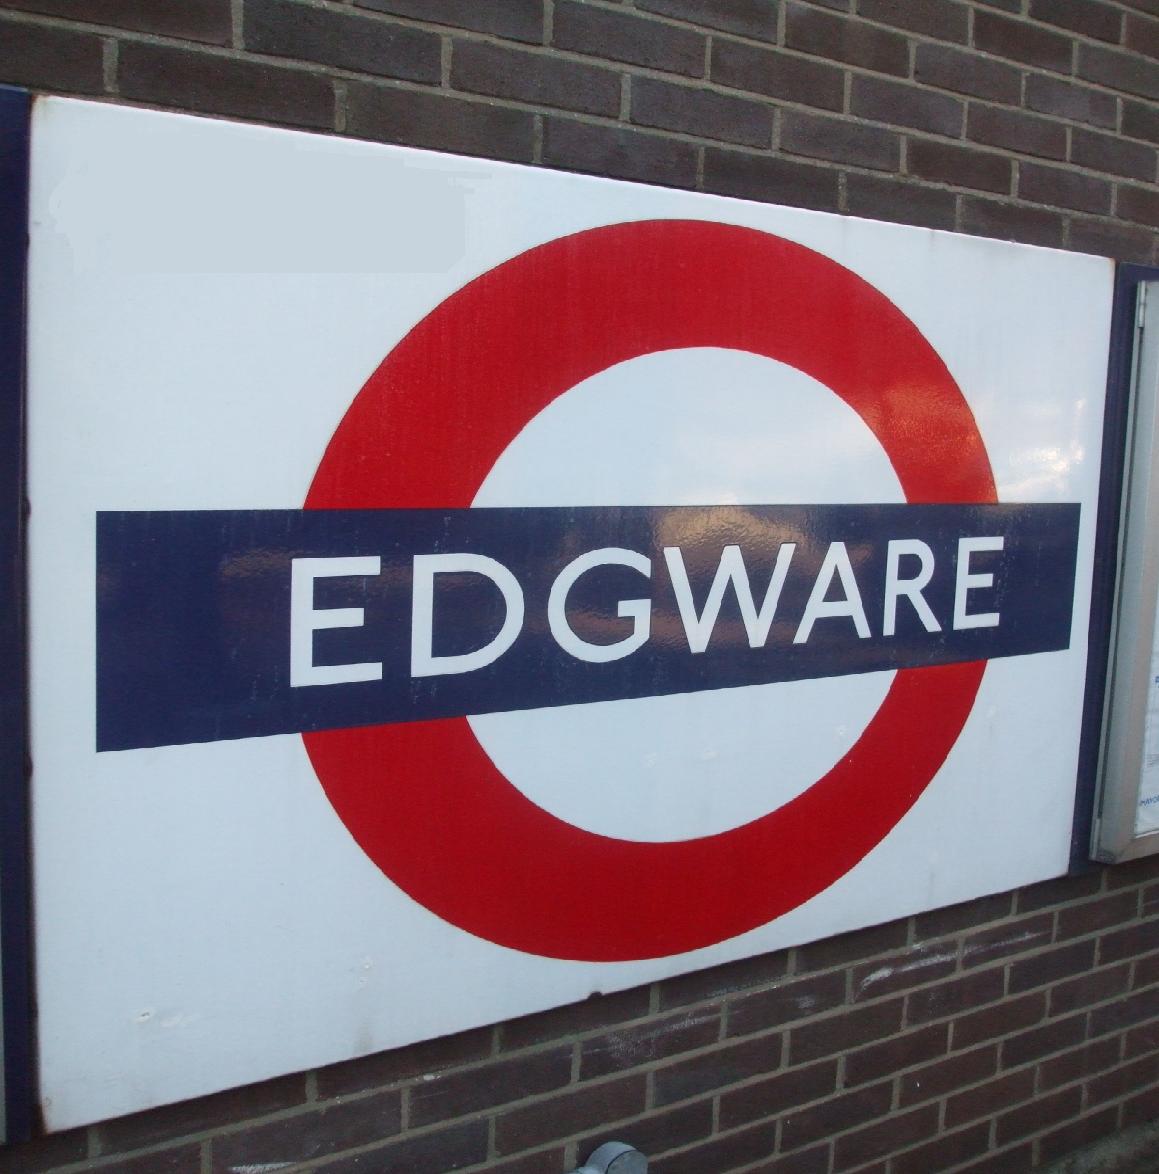 Edgware Tube station